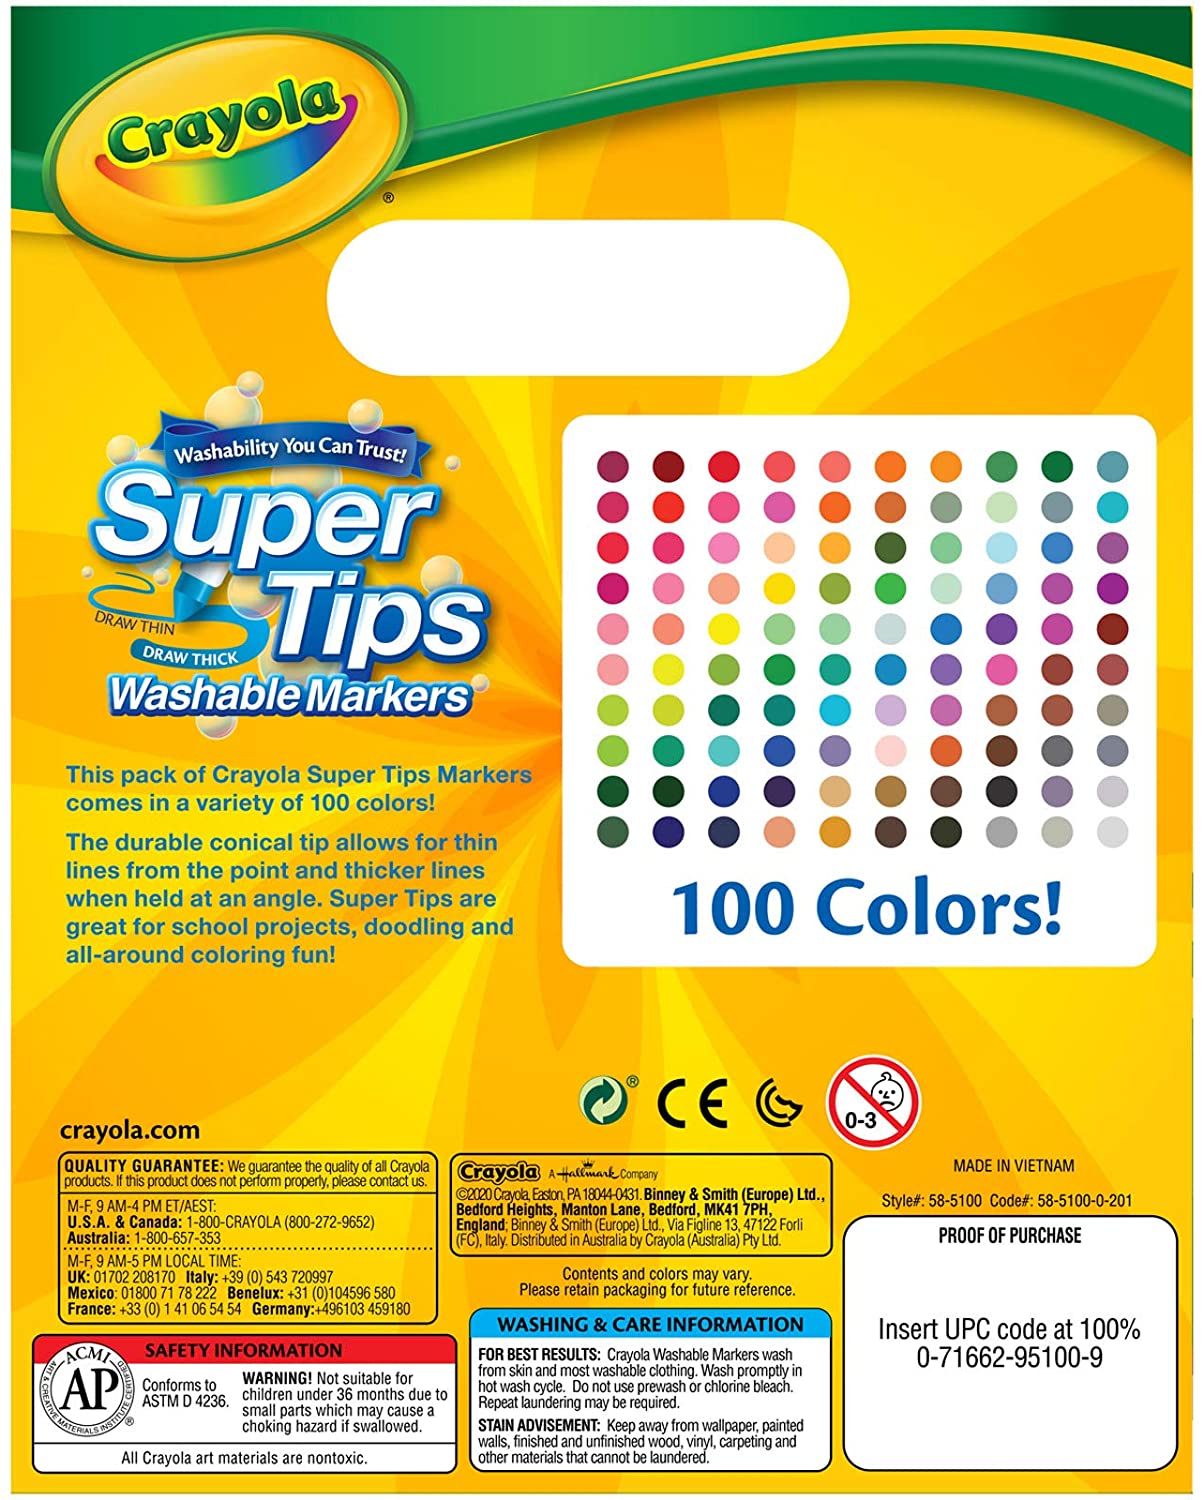 https://www.entrelineaspapeleria.cl/cdn/shop/products/box-100-crayola-super-tips-marcadores-entrelineas-papeleria-727455_1800x1800.jpg?v=1626950396